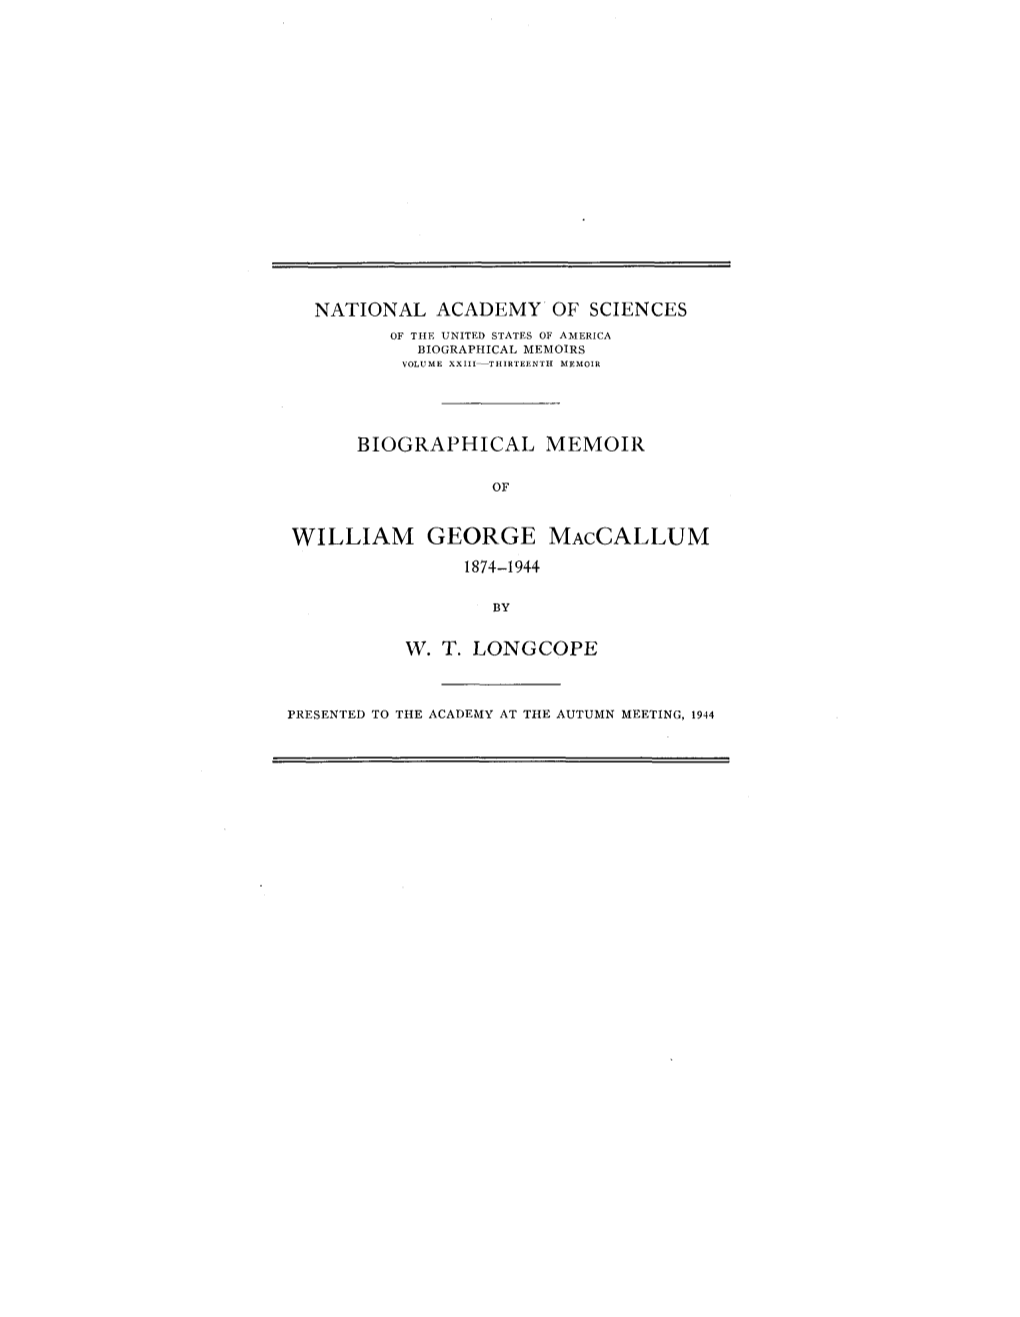 William George Maccallum 1874-1944